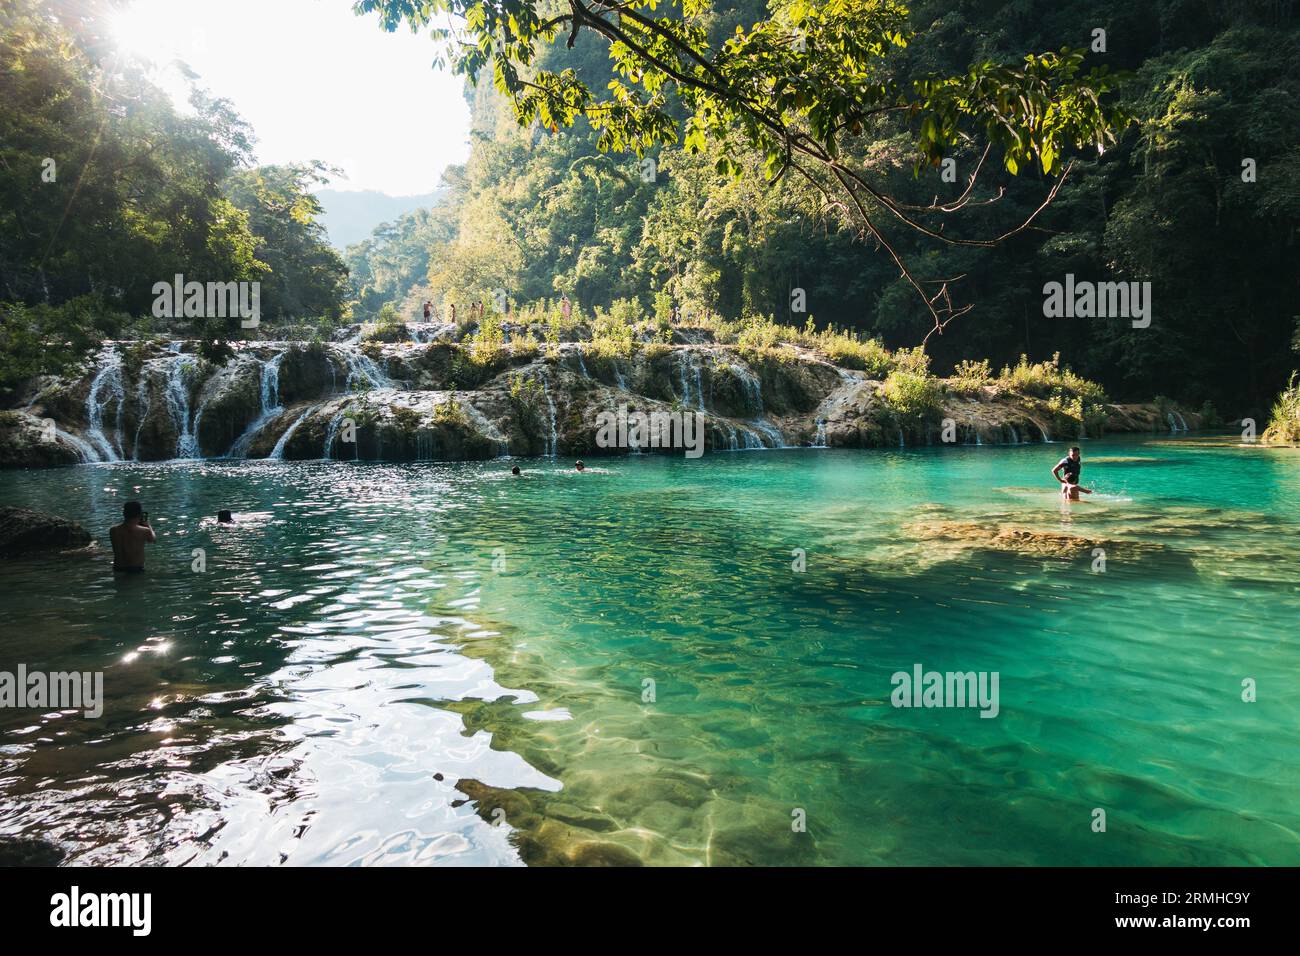 La rivière Cahabón tombe dans des niveaux de piscines sur le monument naturel de Semuc Champey, Guatemala. Les nageurs en tirent le meilleur parti par un après-midi ensoleillé Banque D'Images